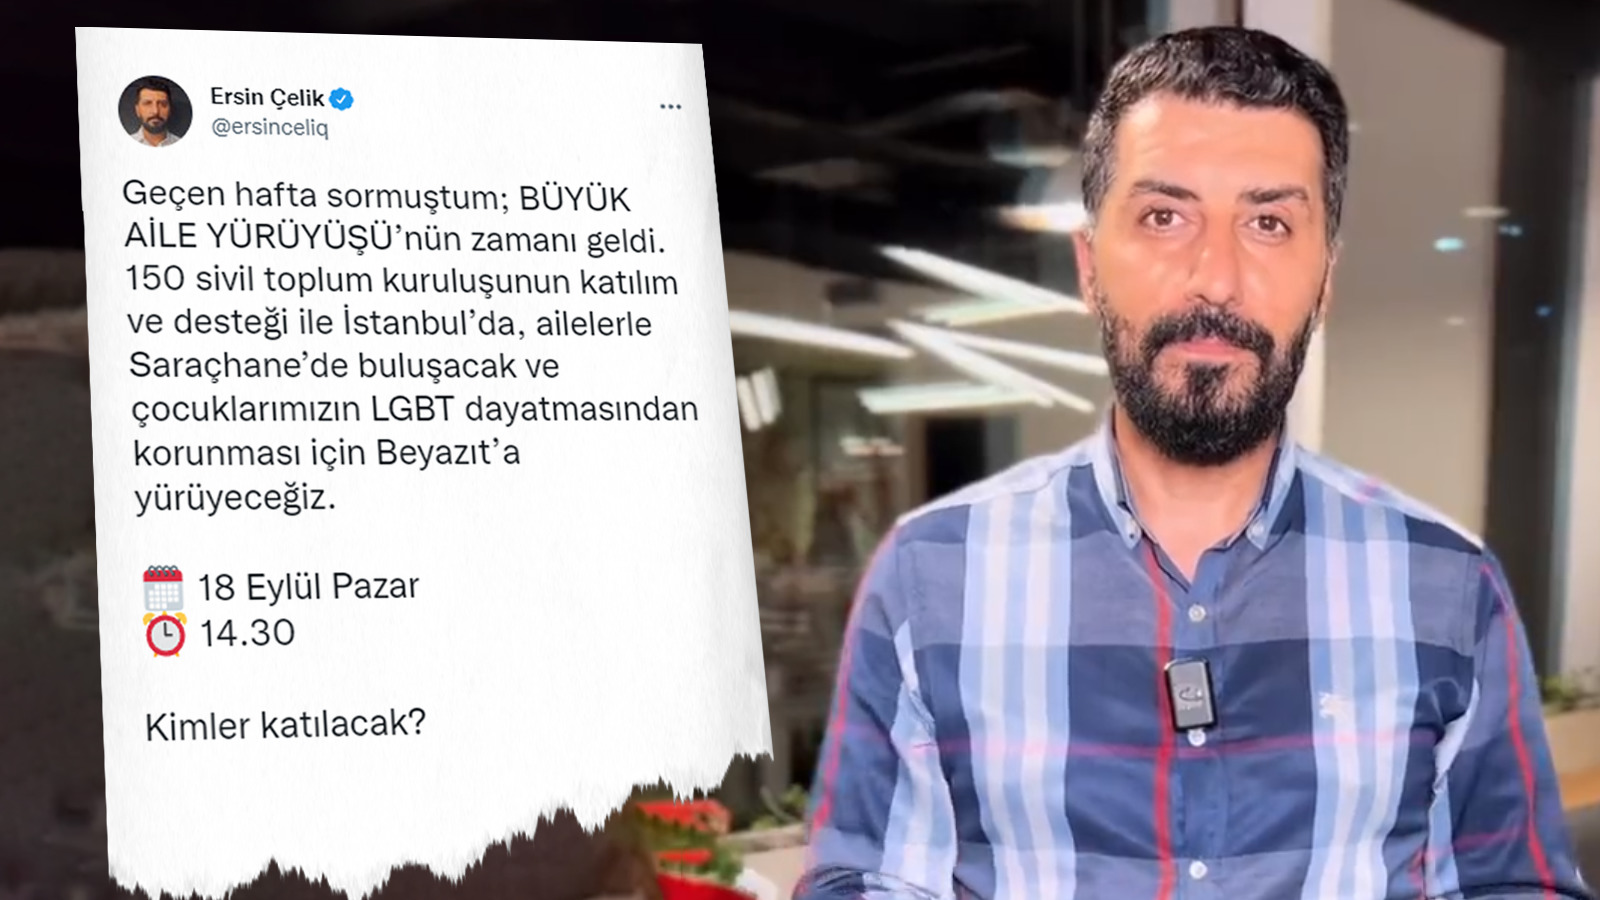 Aileler İstanbul’da LGBT dayatmasına karşı yürüyecek: 150 STK bir araya geldi